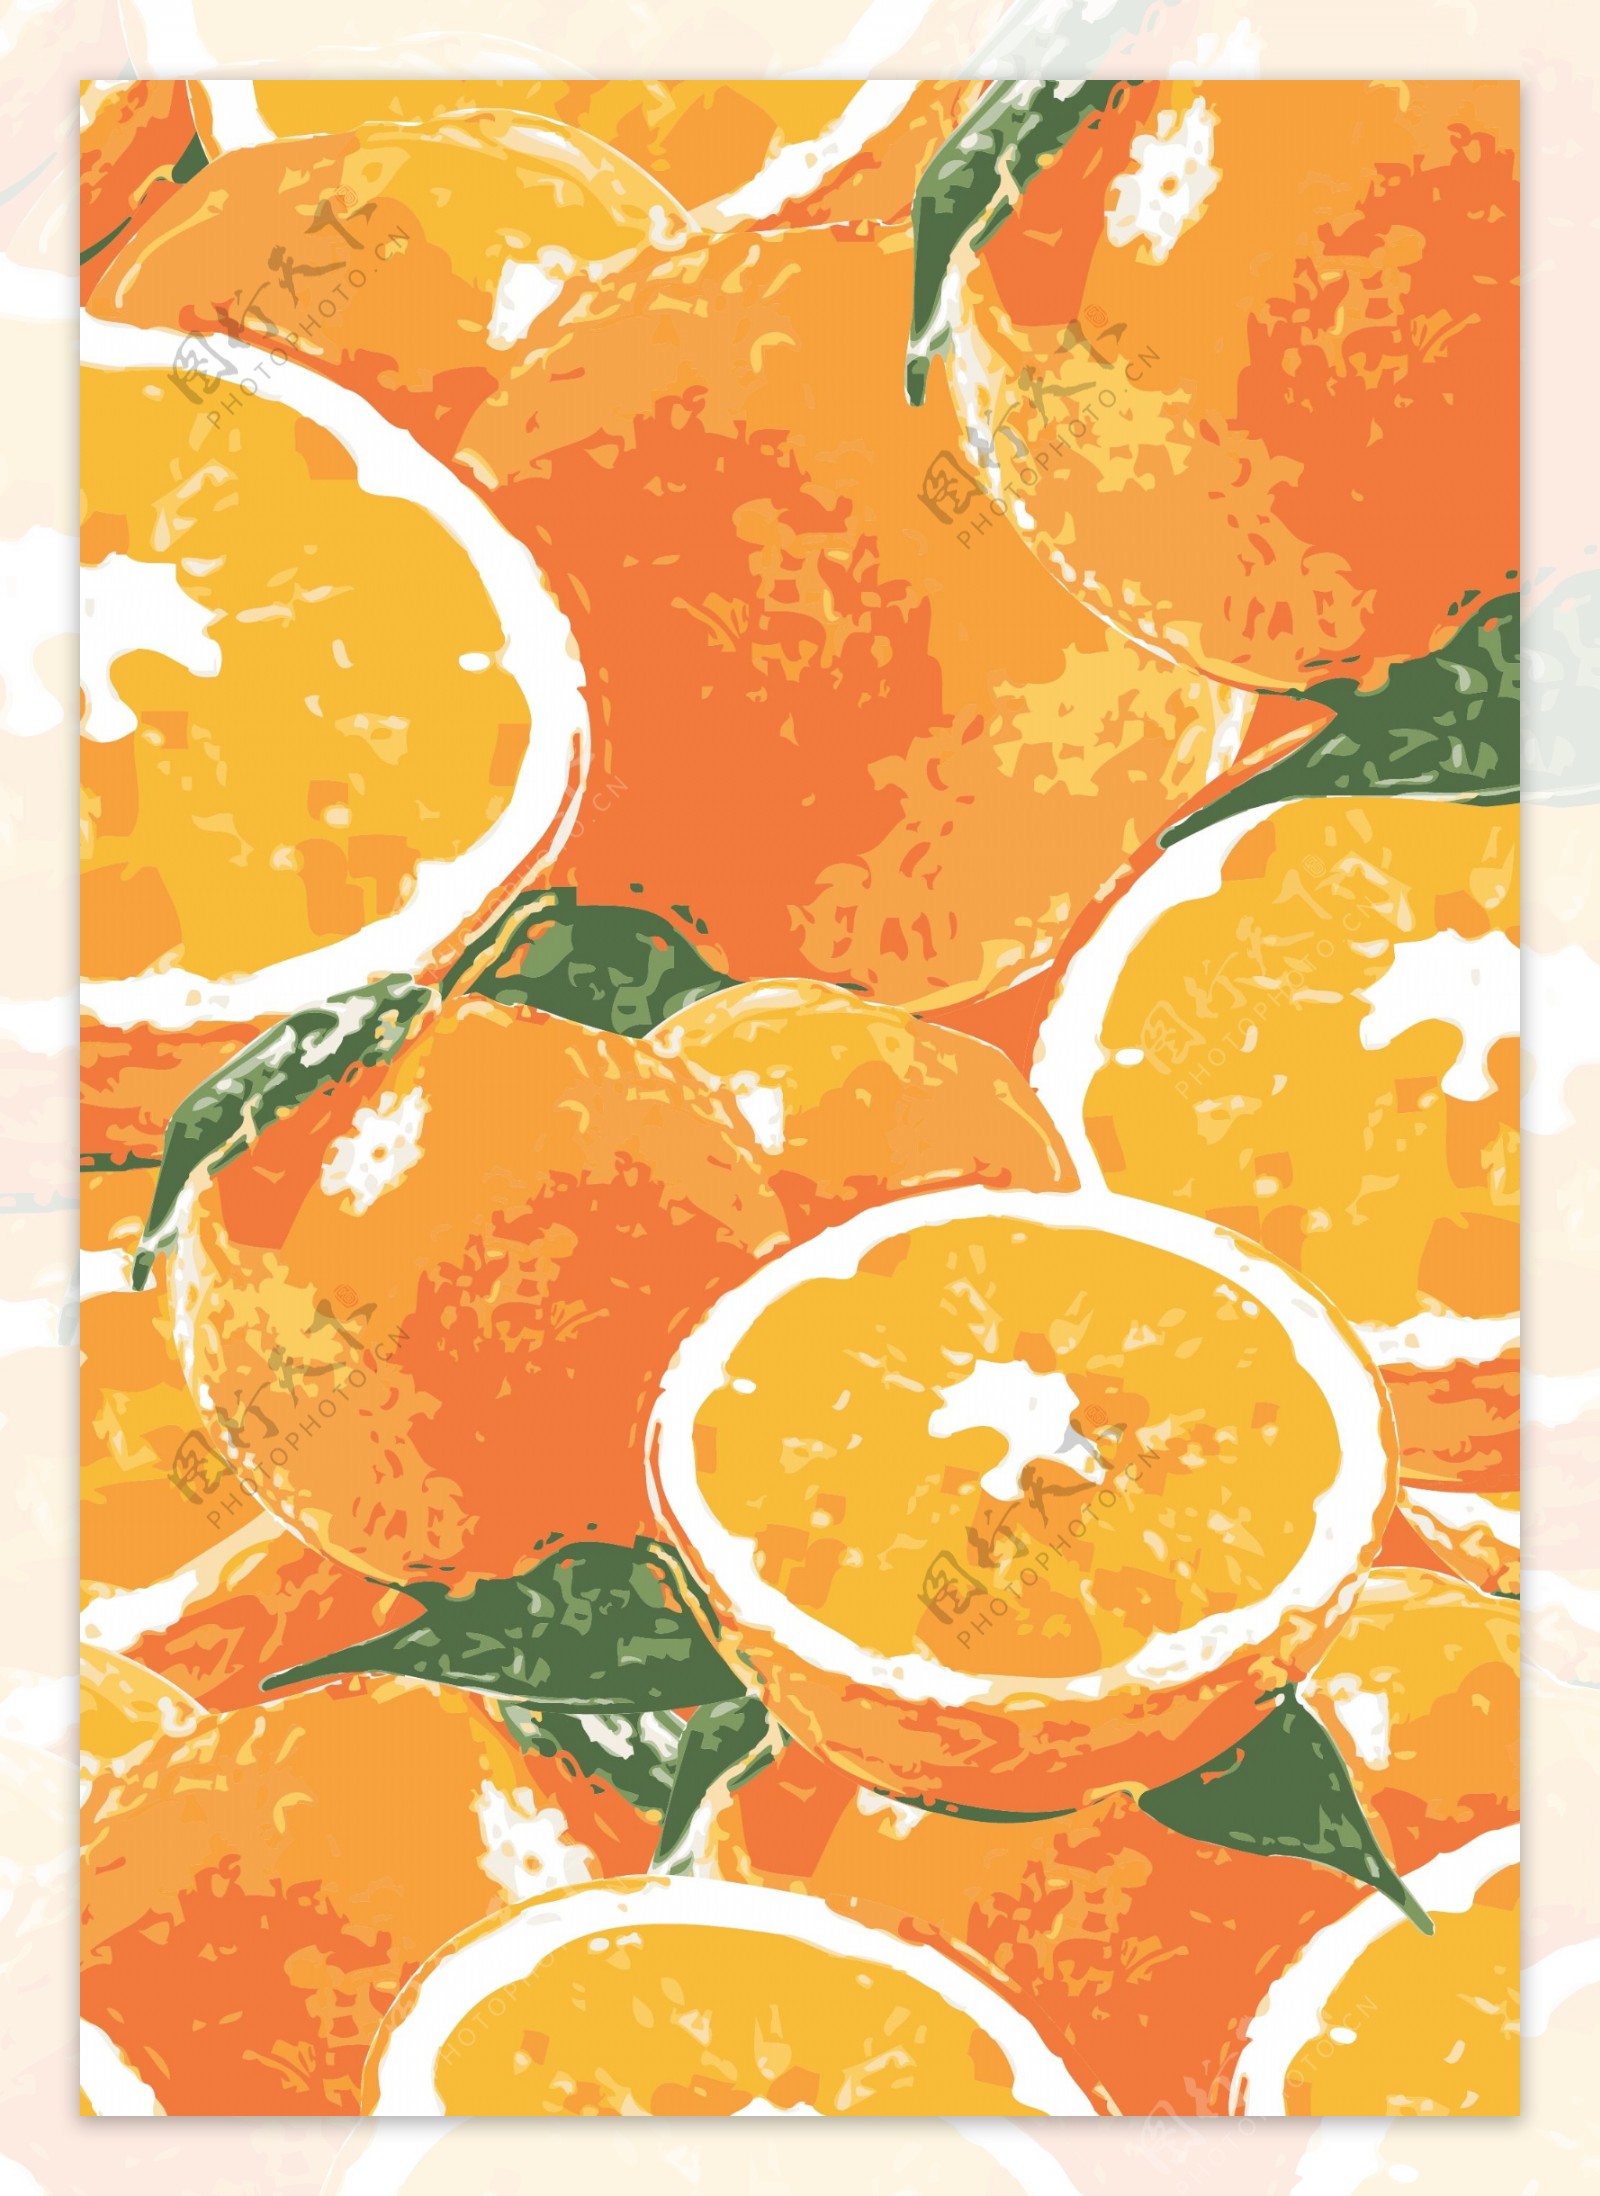 水果橘子手绘底纹背景素材